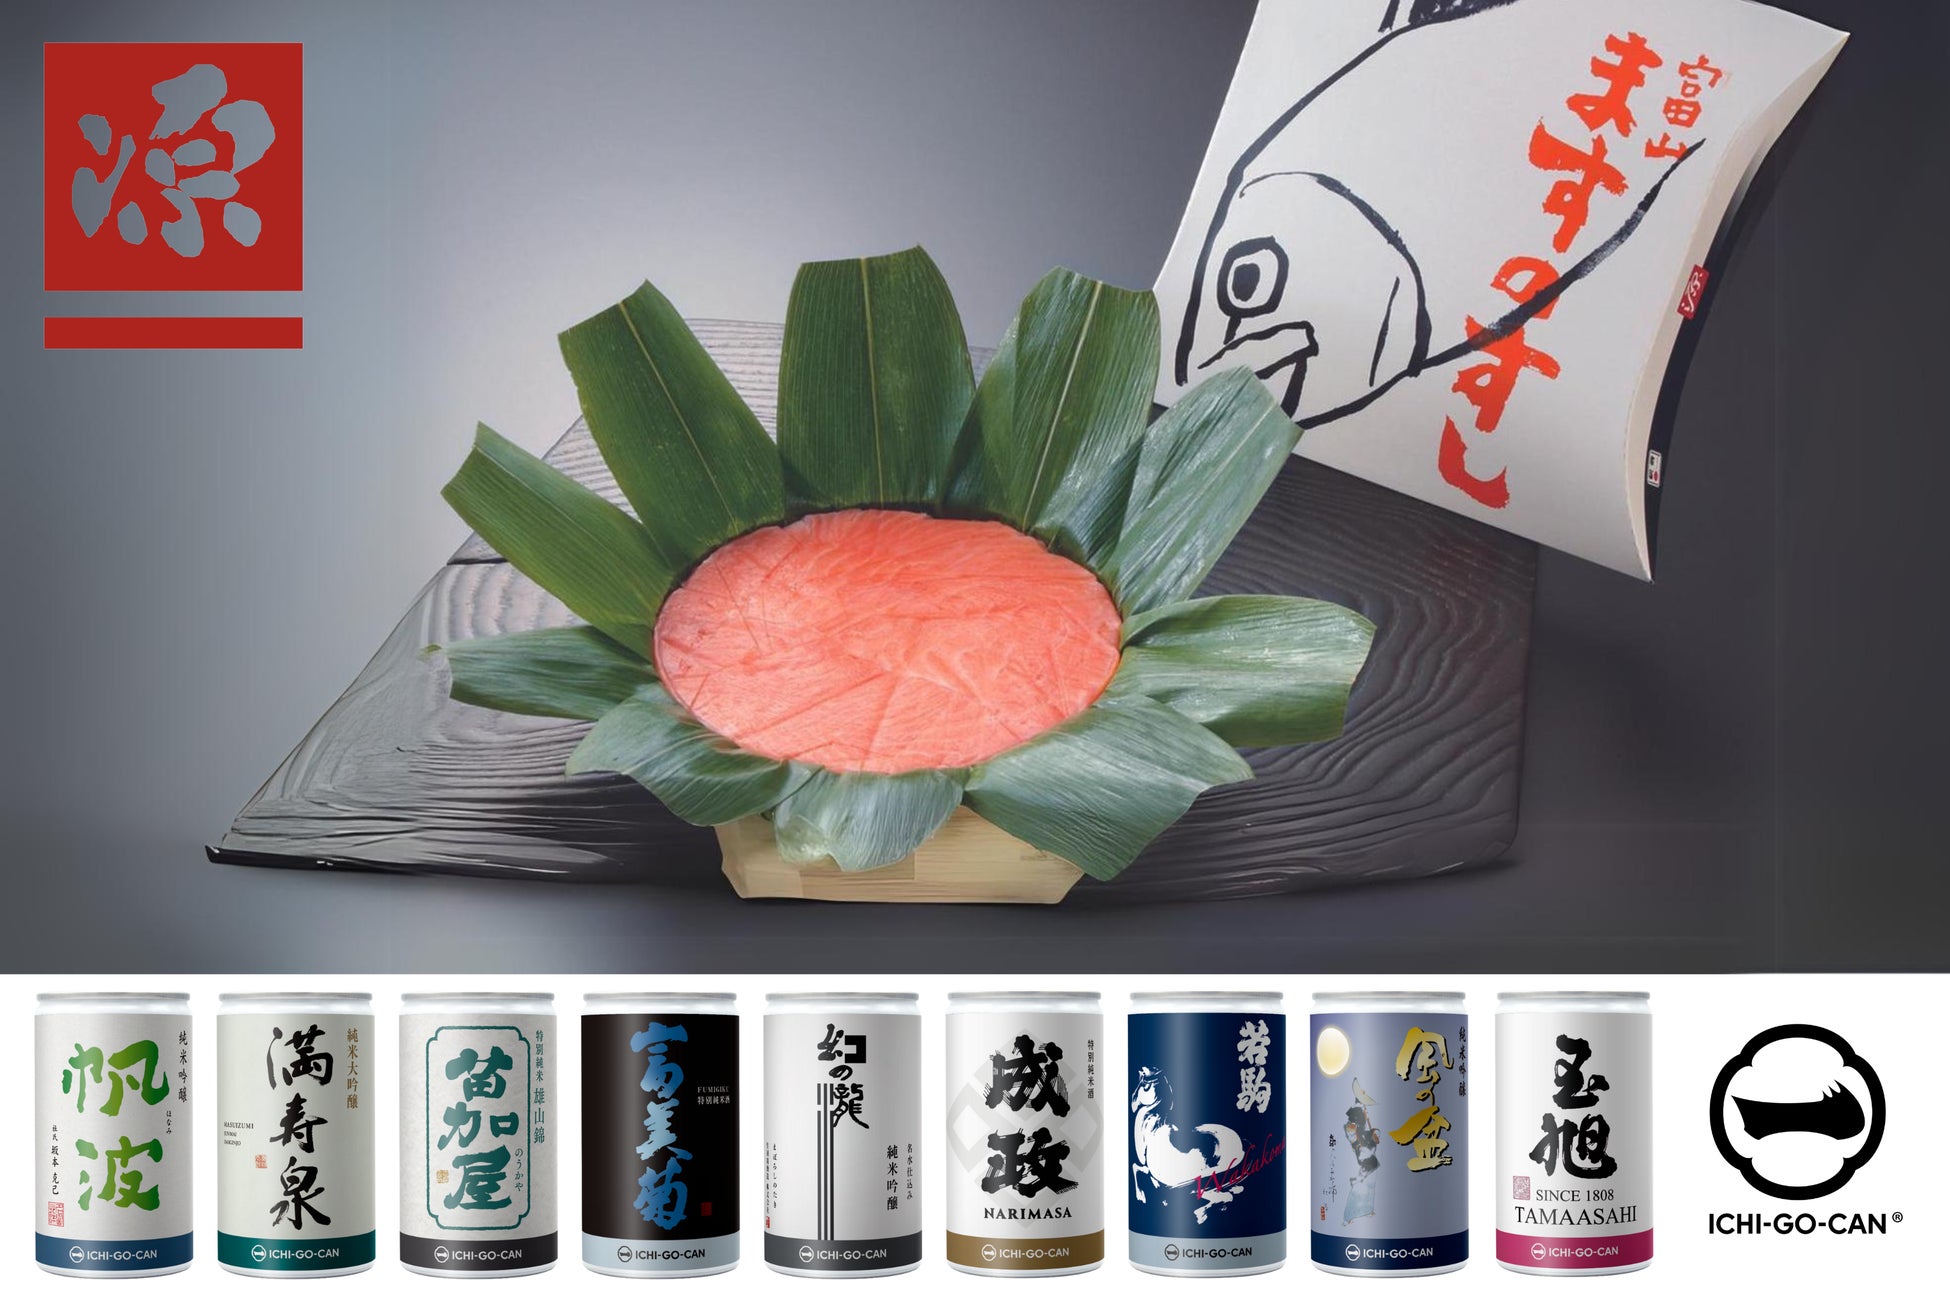 ポケモンをモチーフにした京菓子 第四弾が登場。七條甘春堂 ポケモン京菓子 夏 を6月29日（土）より数量限定で販売。一部商品は6月17日（月）よりオンラインにて予約を受付中。